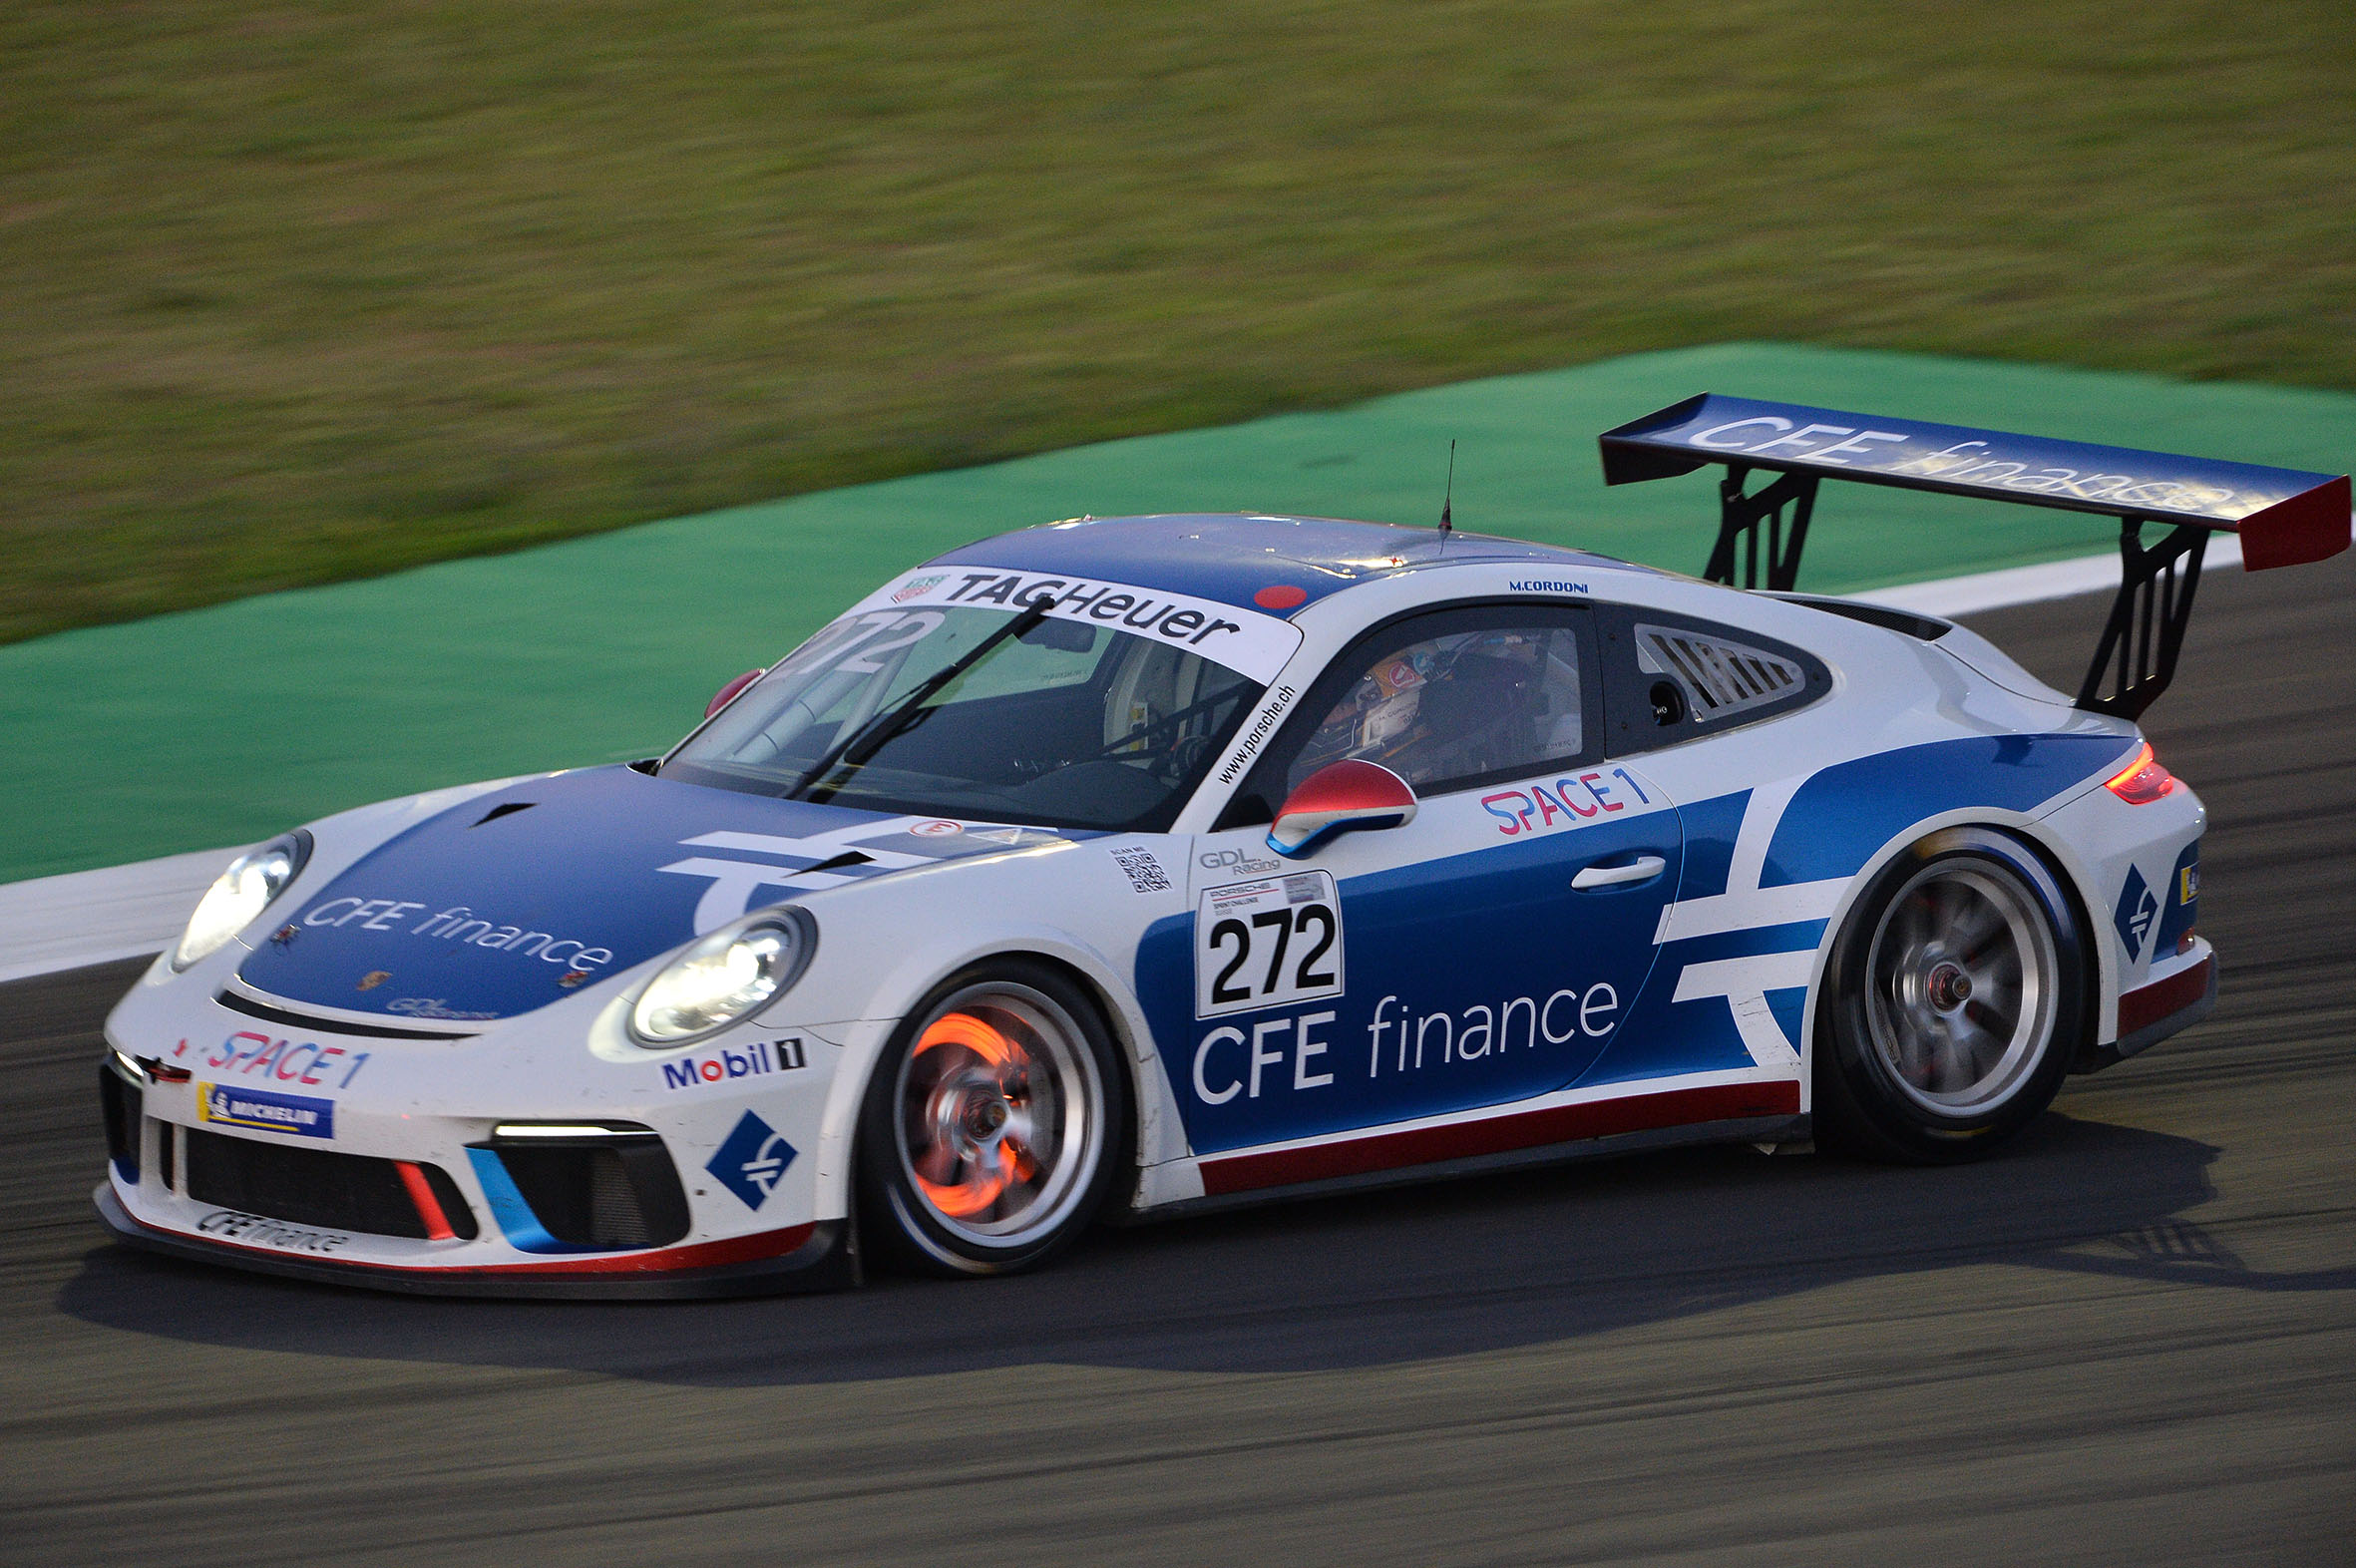 GDL Racing doubles its Porsche Cup Suisse campaign